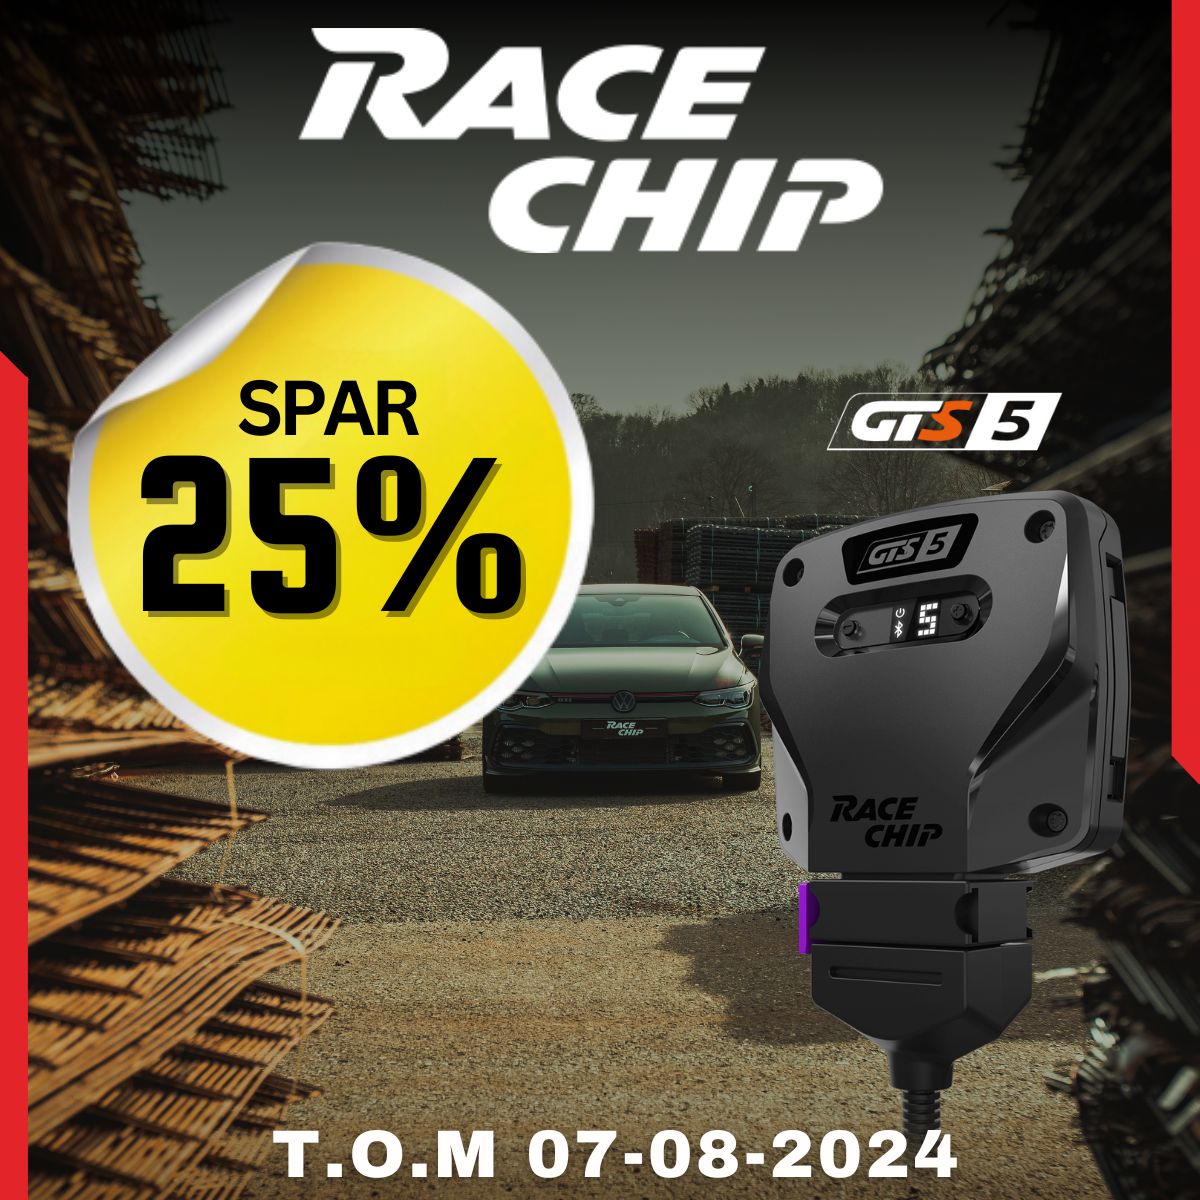 RaceChip feirer bursdag! Spar 25% på RaceChip GTS5 og GTS5 Black.